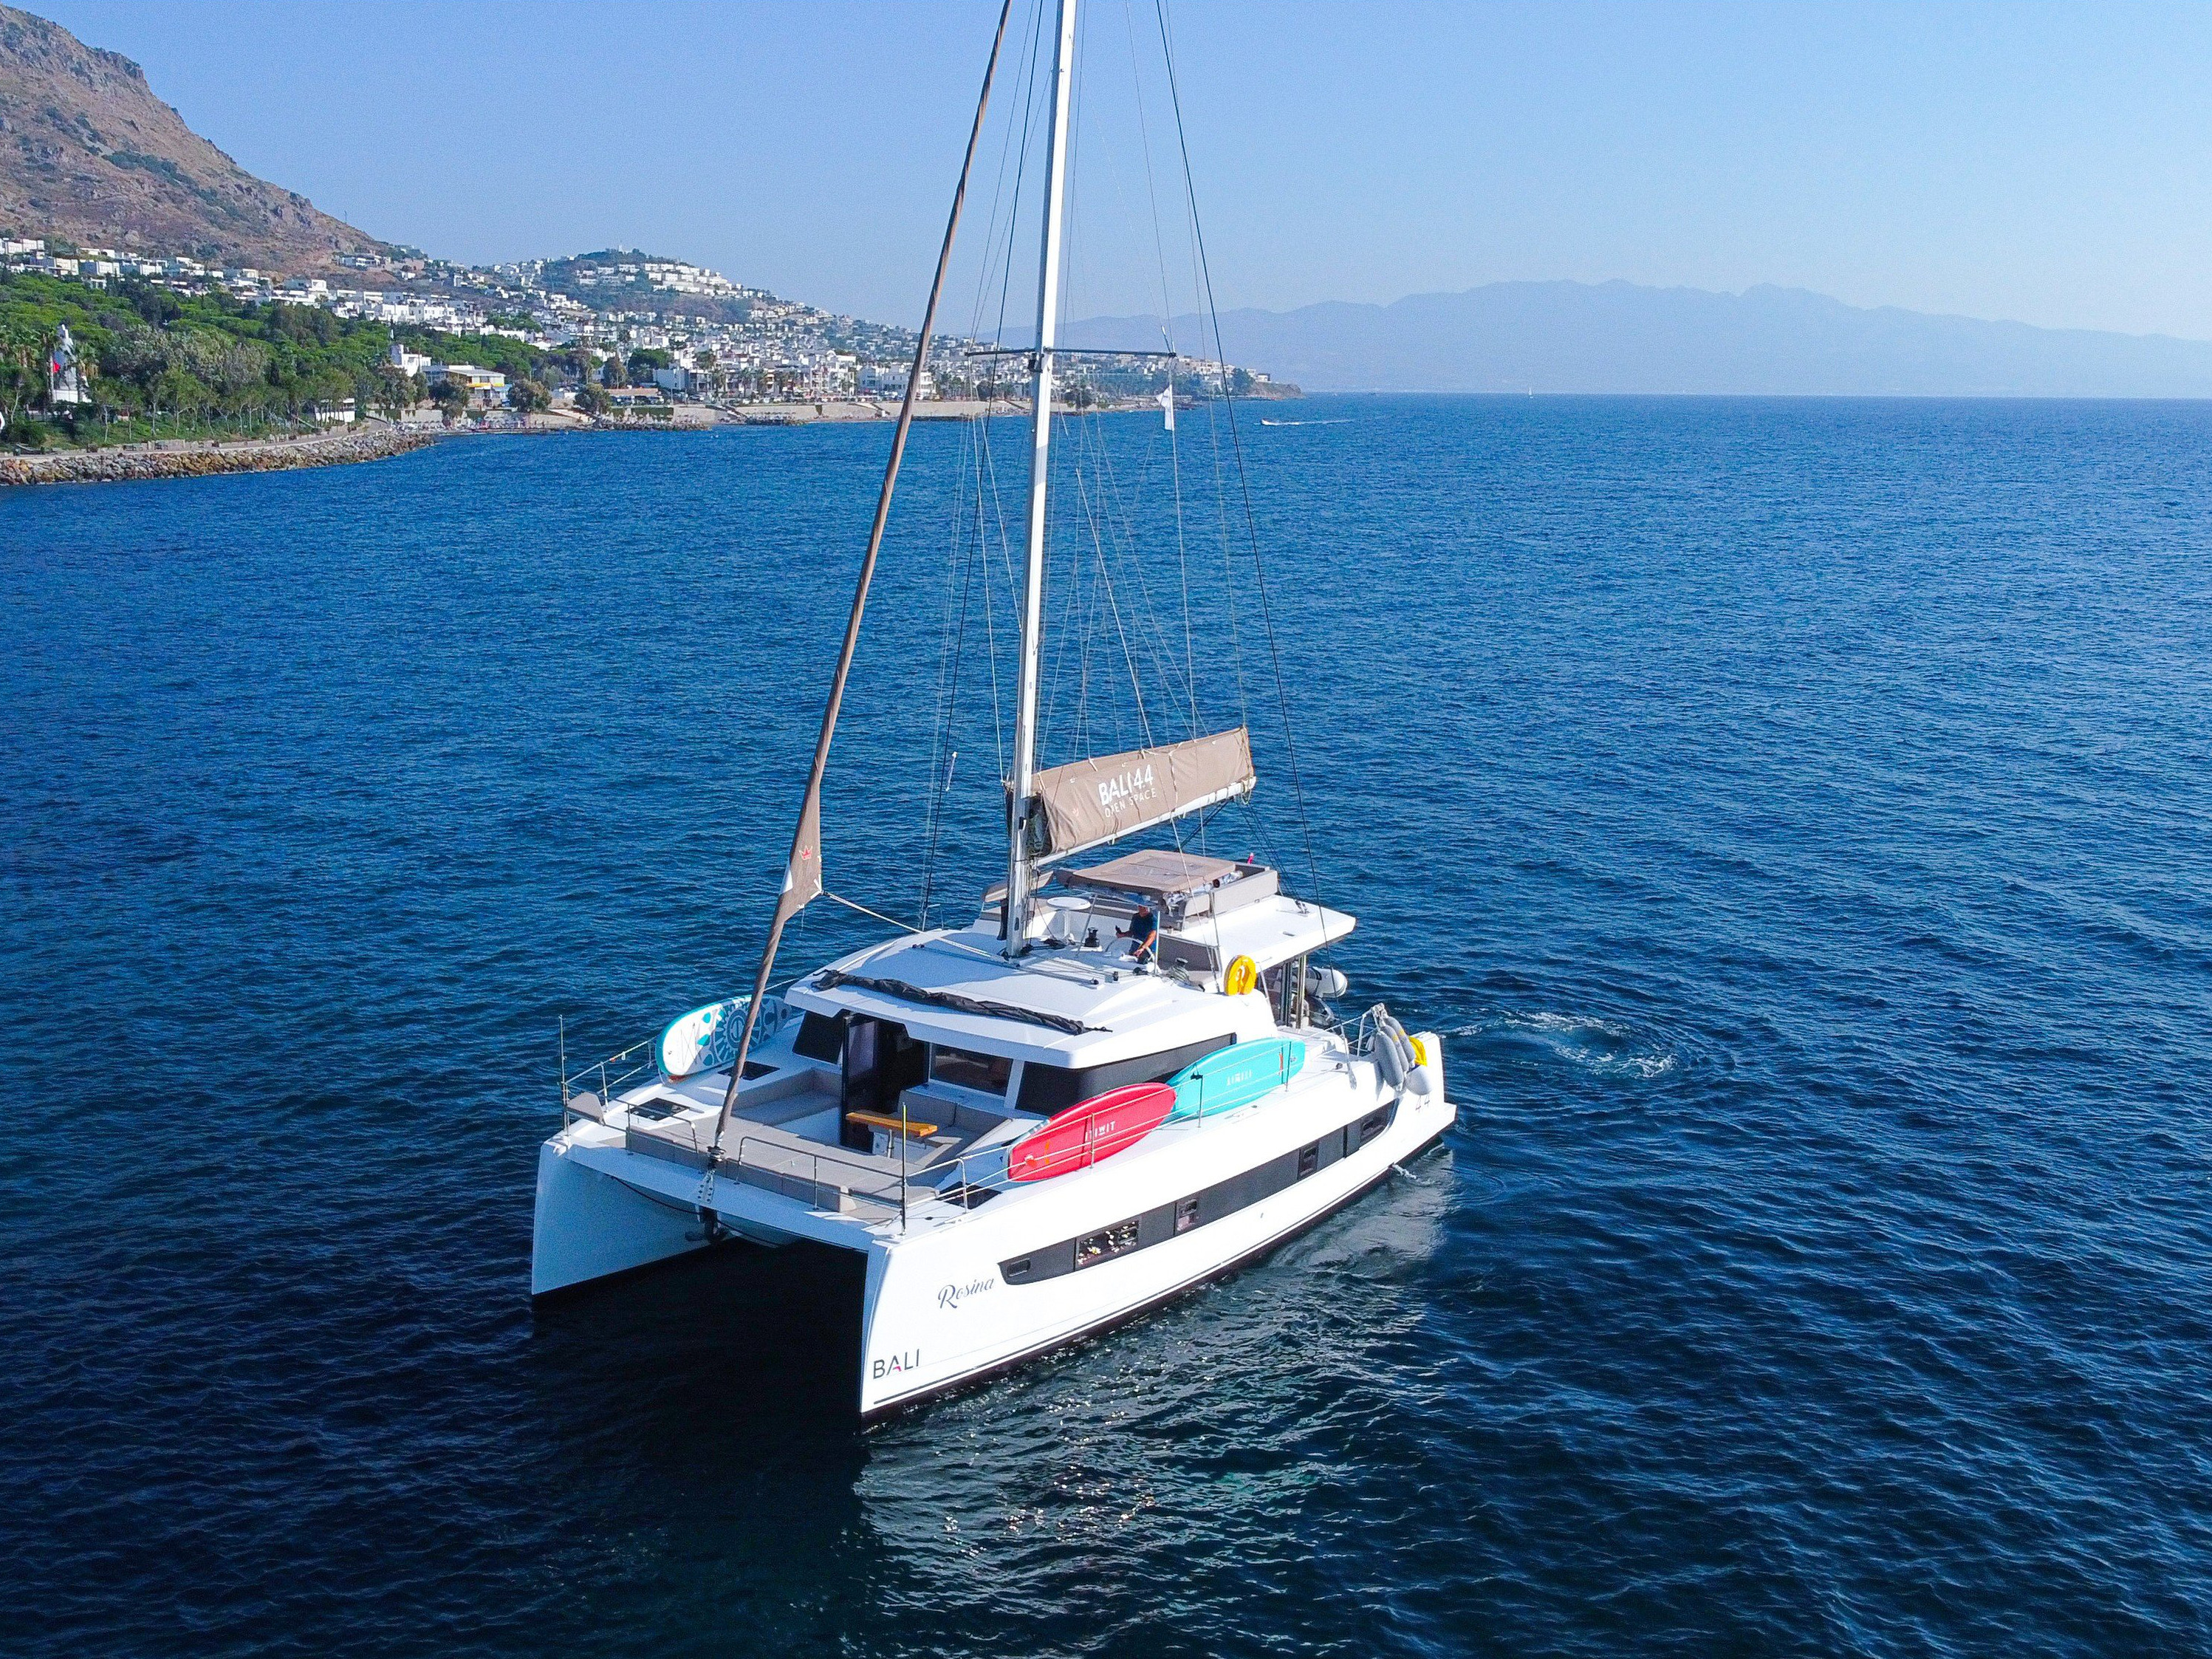 Yacht charter Bali 4.4 - Turkey, Mediterranean Turkey - western part, Albatros/Marmaris